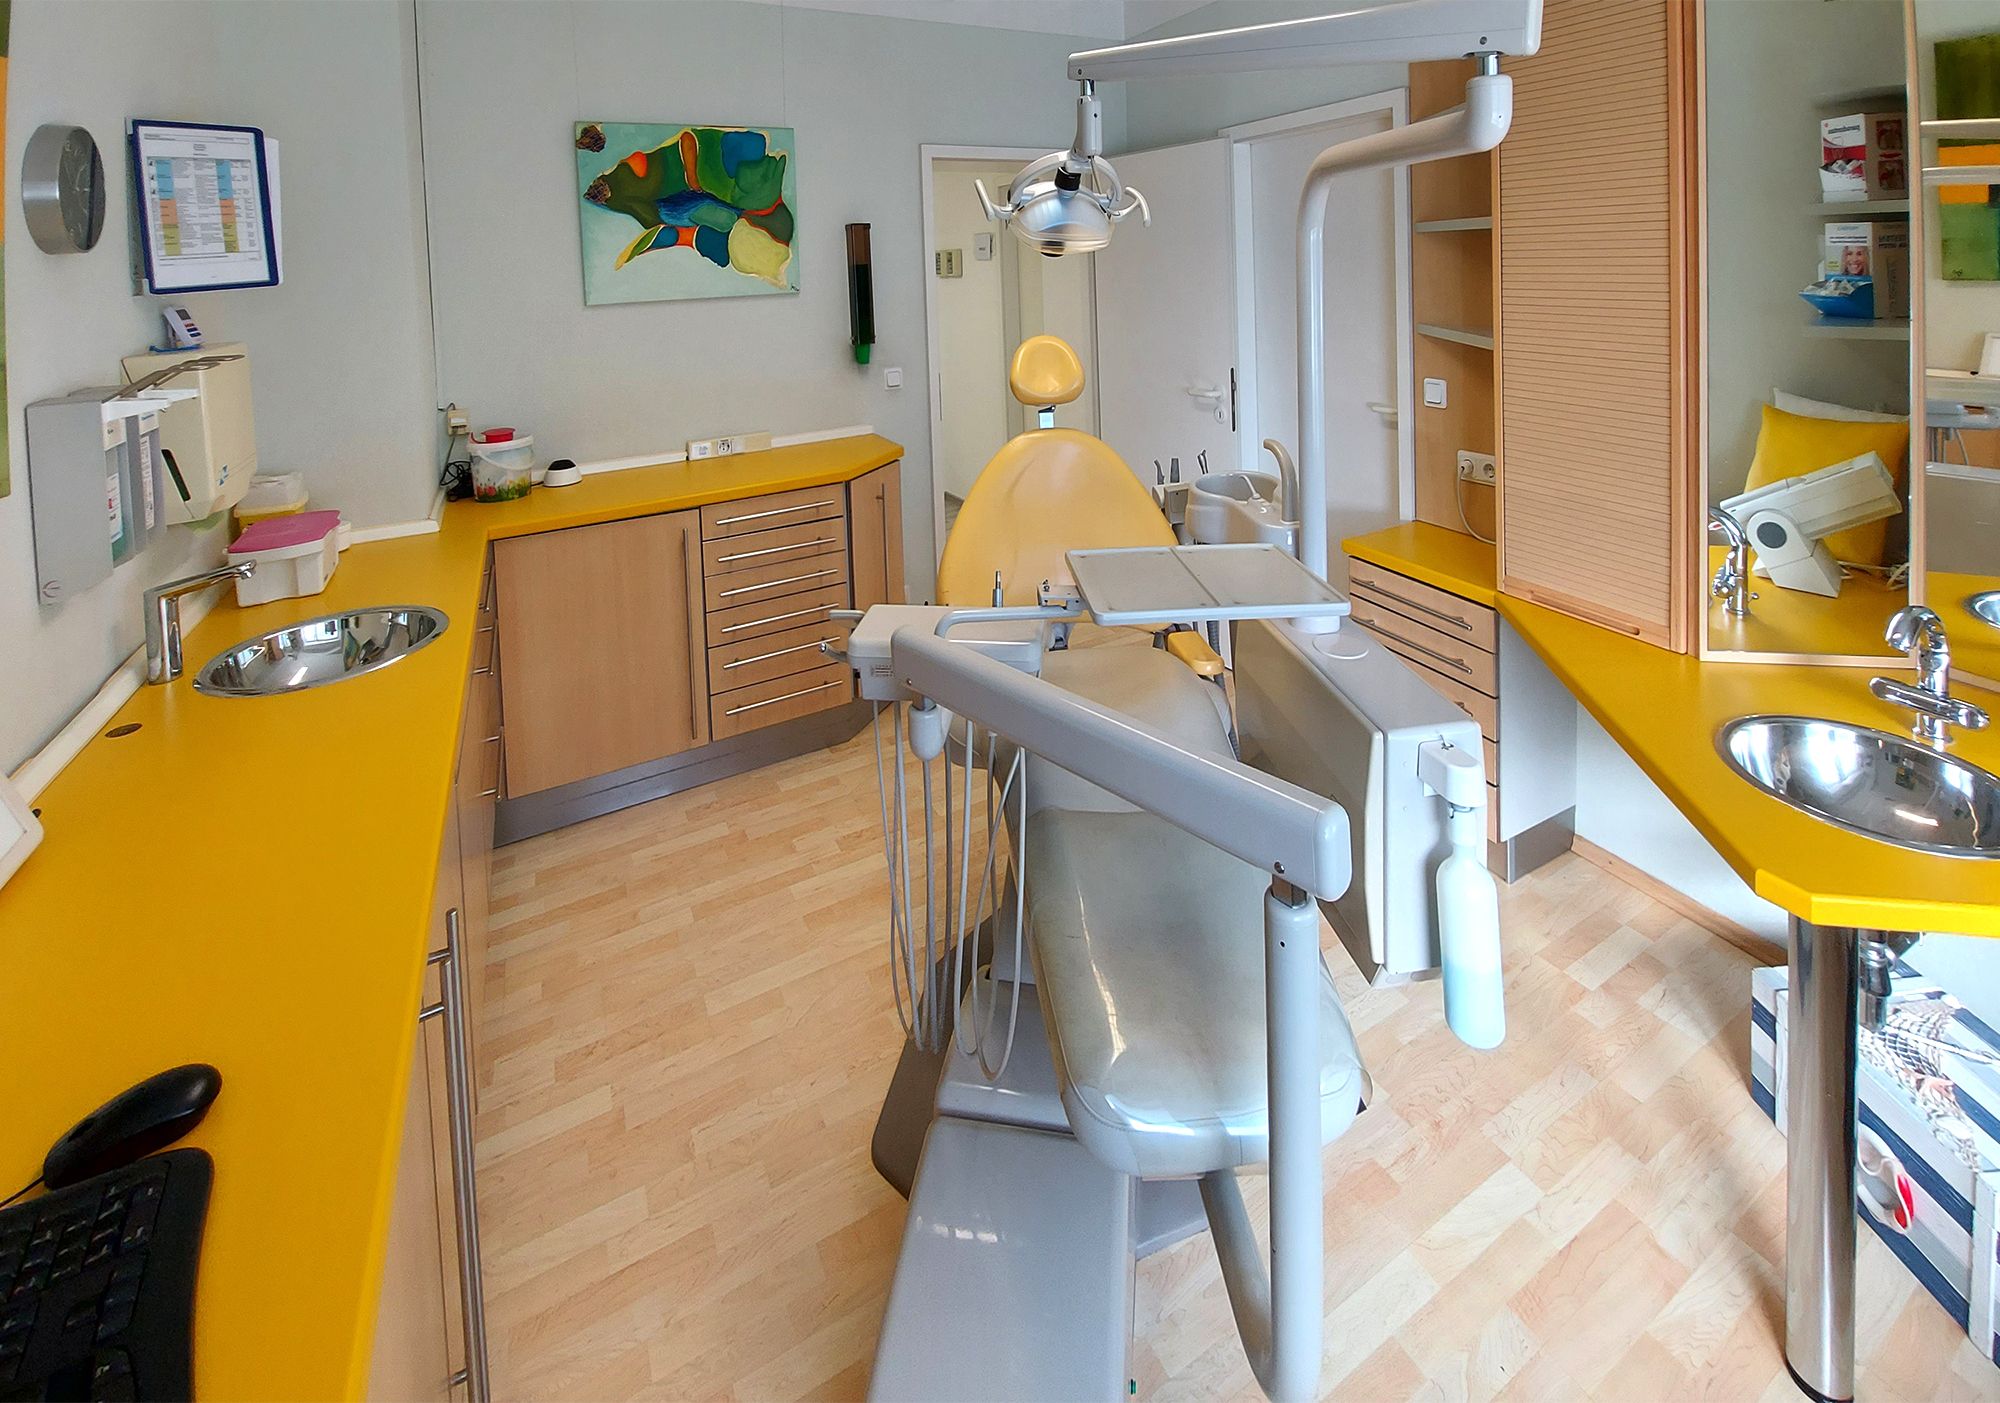 Zahnarzt Goette Praxis Behandlungzimmer Pirmasens